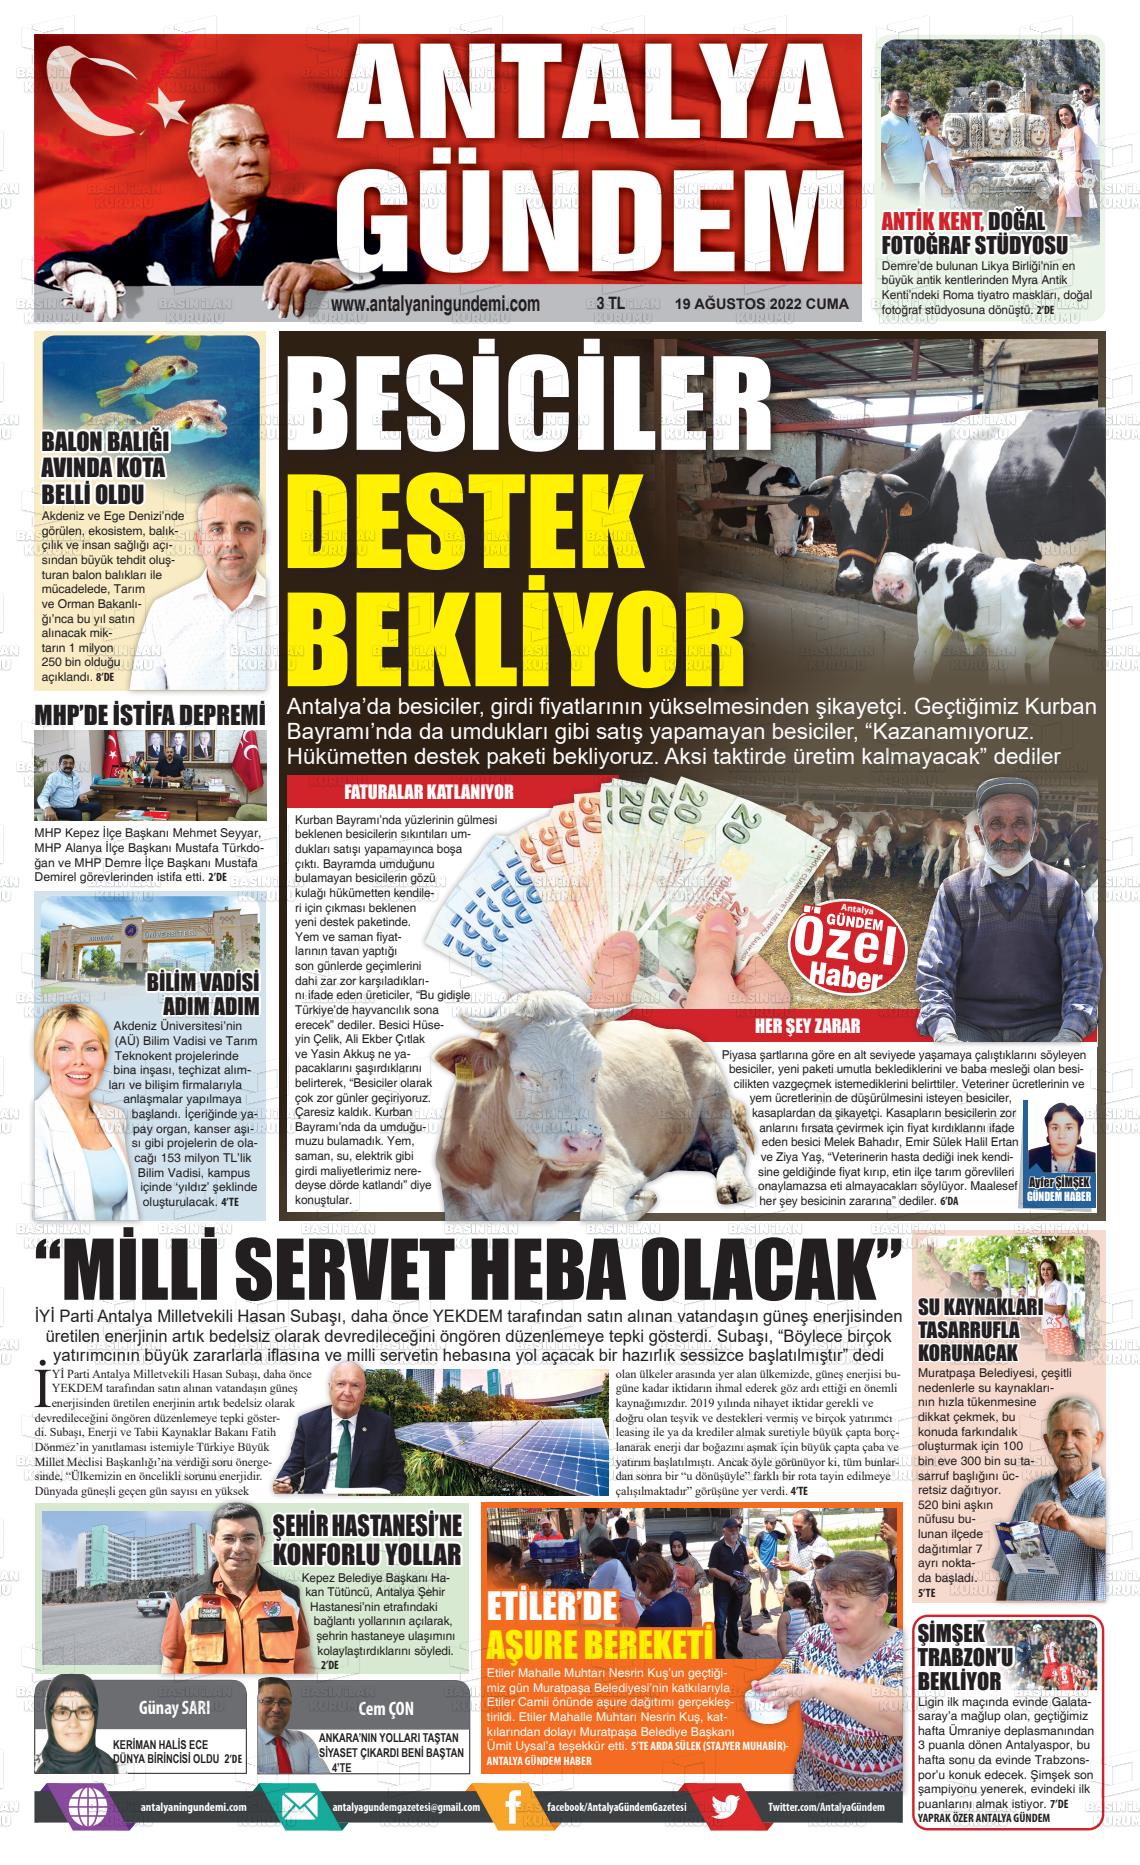 19 Ağustos 2022 Antalya'nın Gündemi Gazete Manşeti